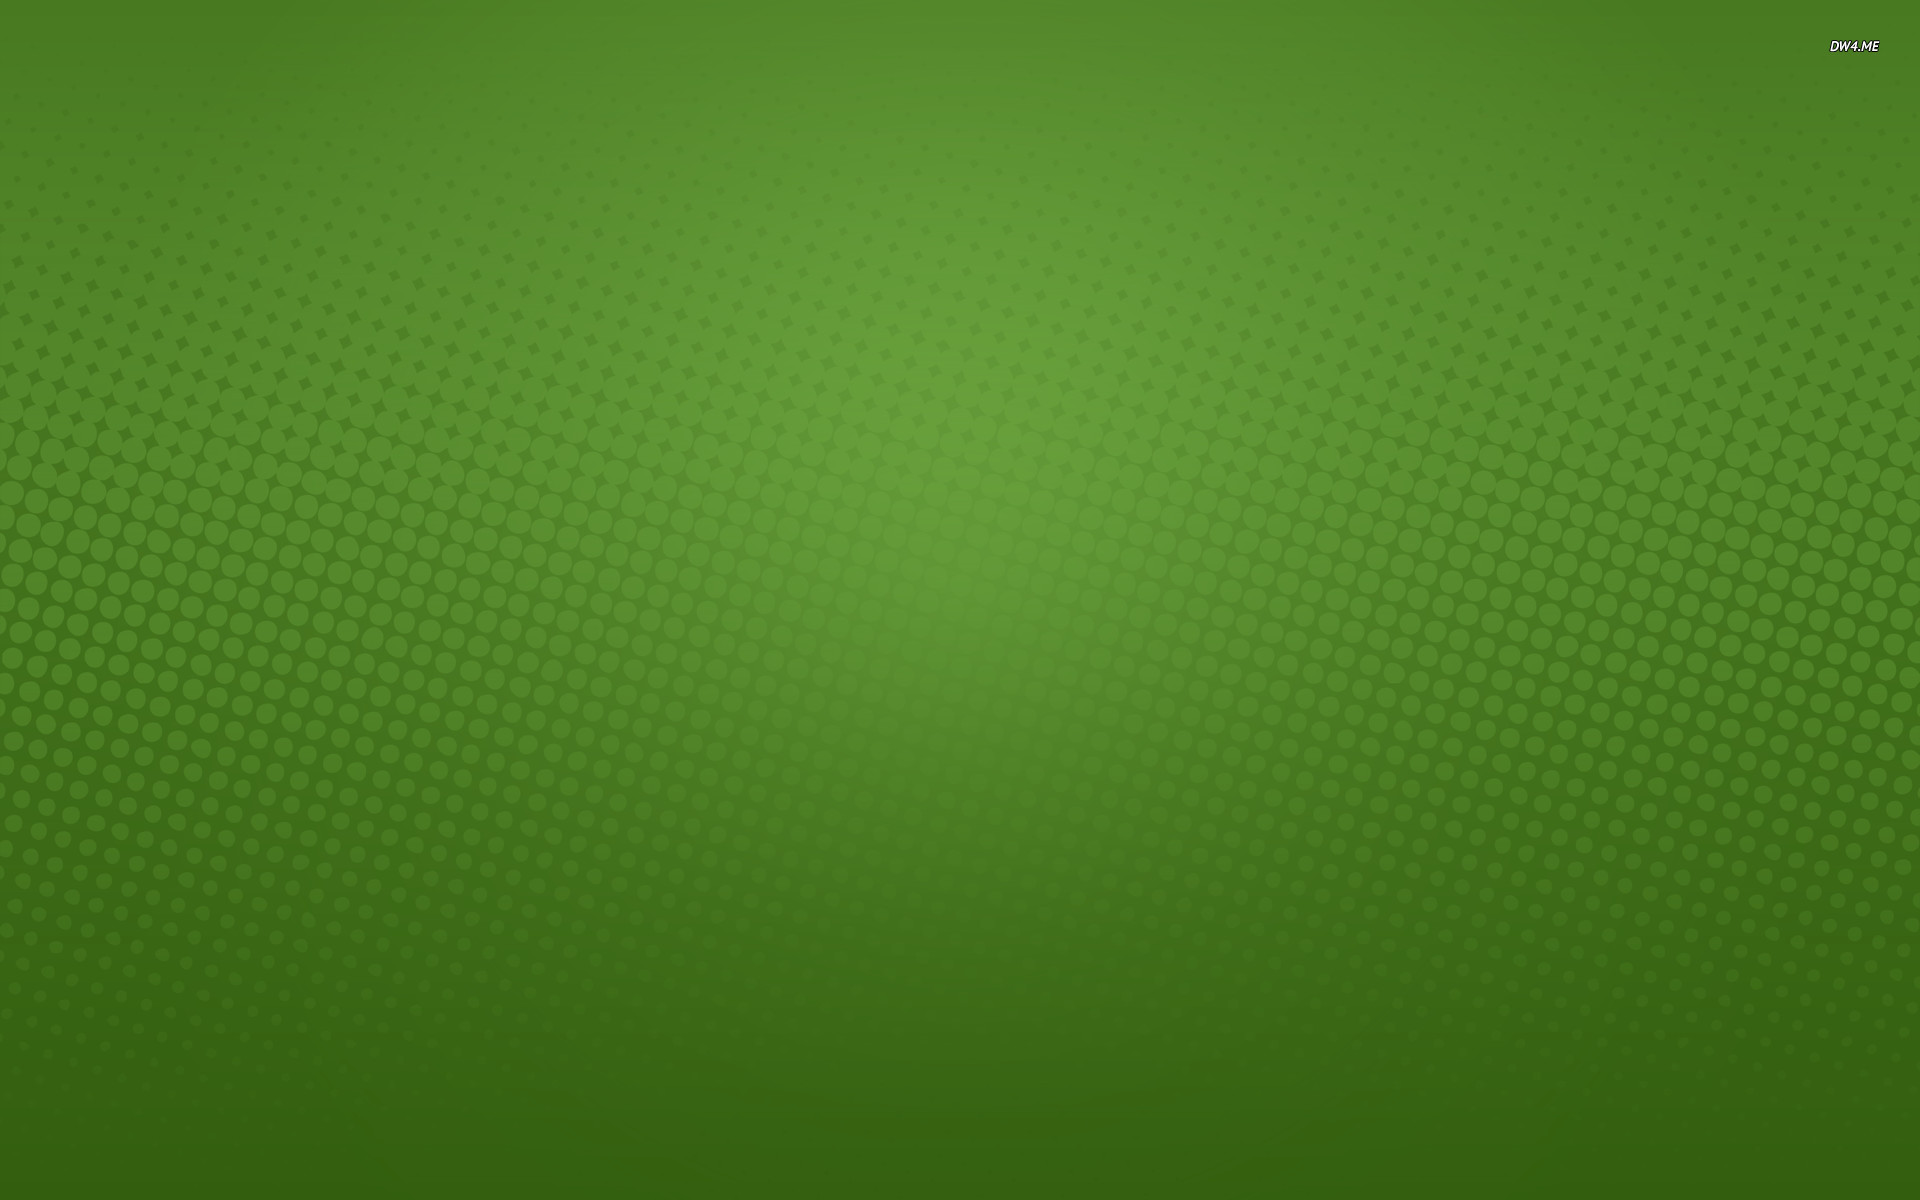 1920x1200 Solid Desktop Wallpaper - WallpaperSafari Free Green ...